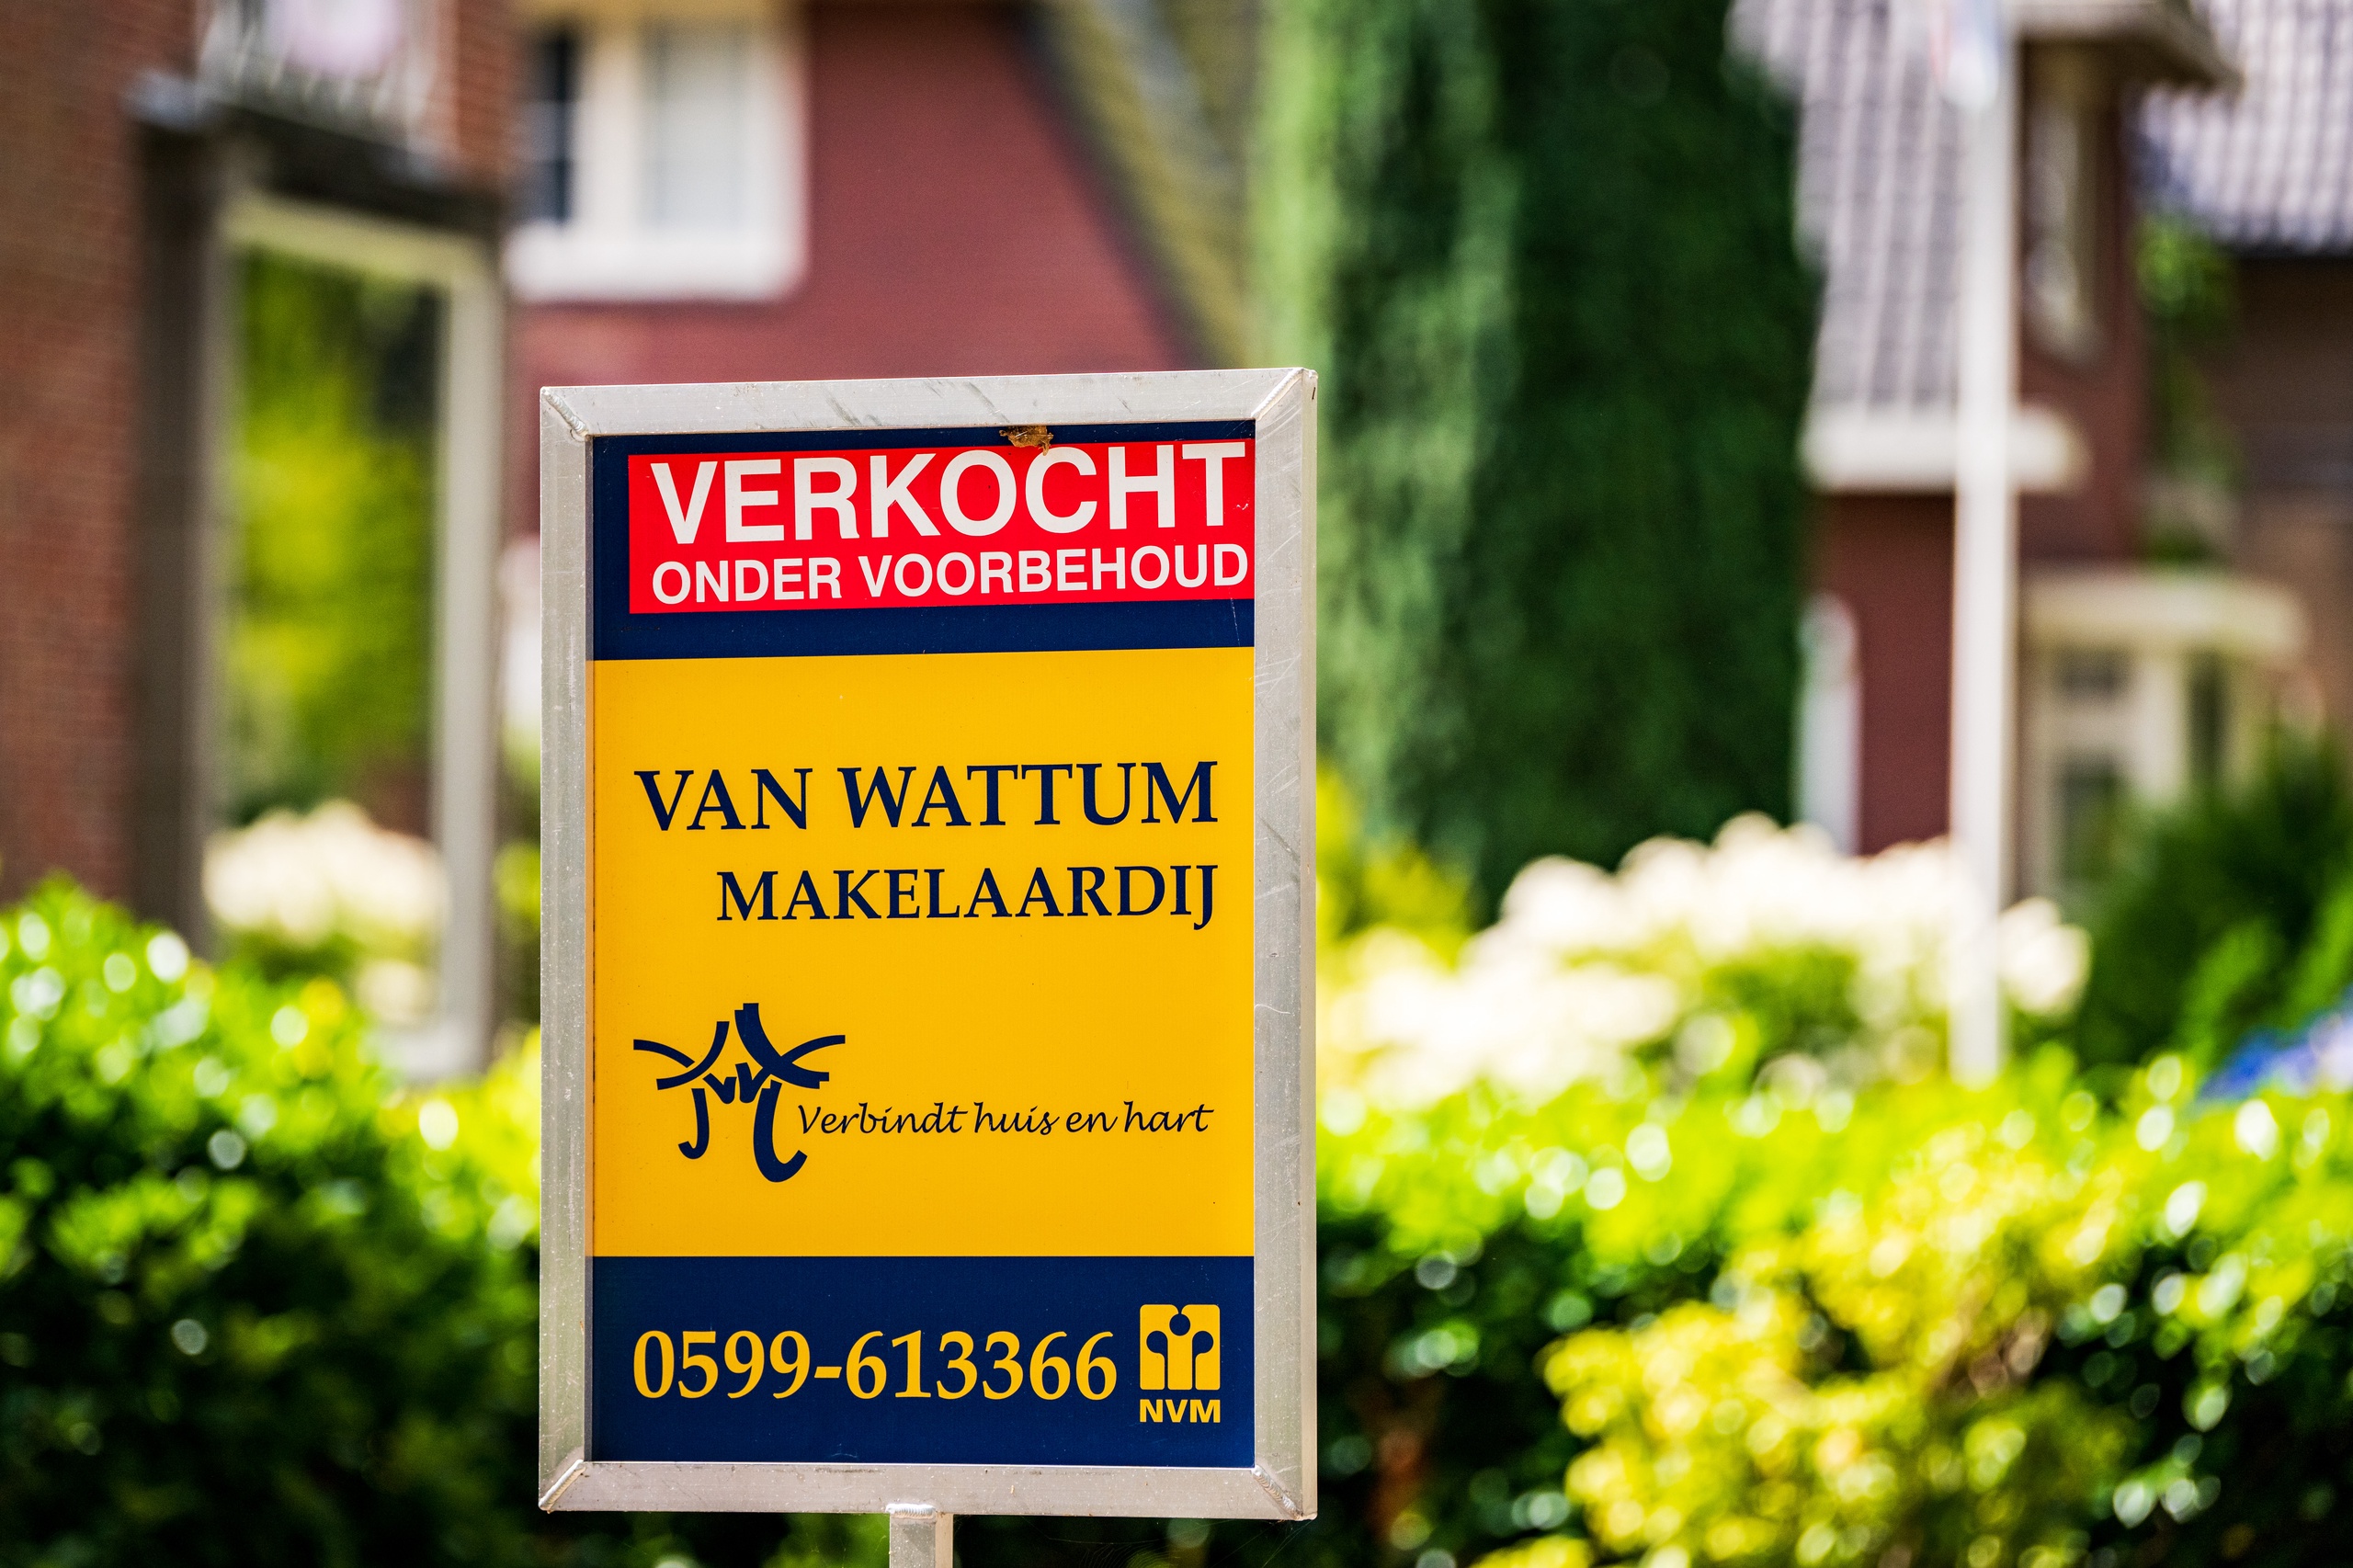 Een woning is verkocht onder voorbehoud. ANP / Hollandse Hoogte / Venema Media